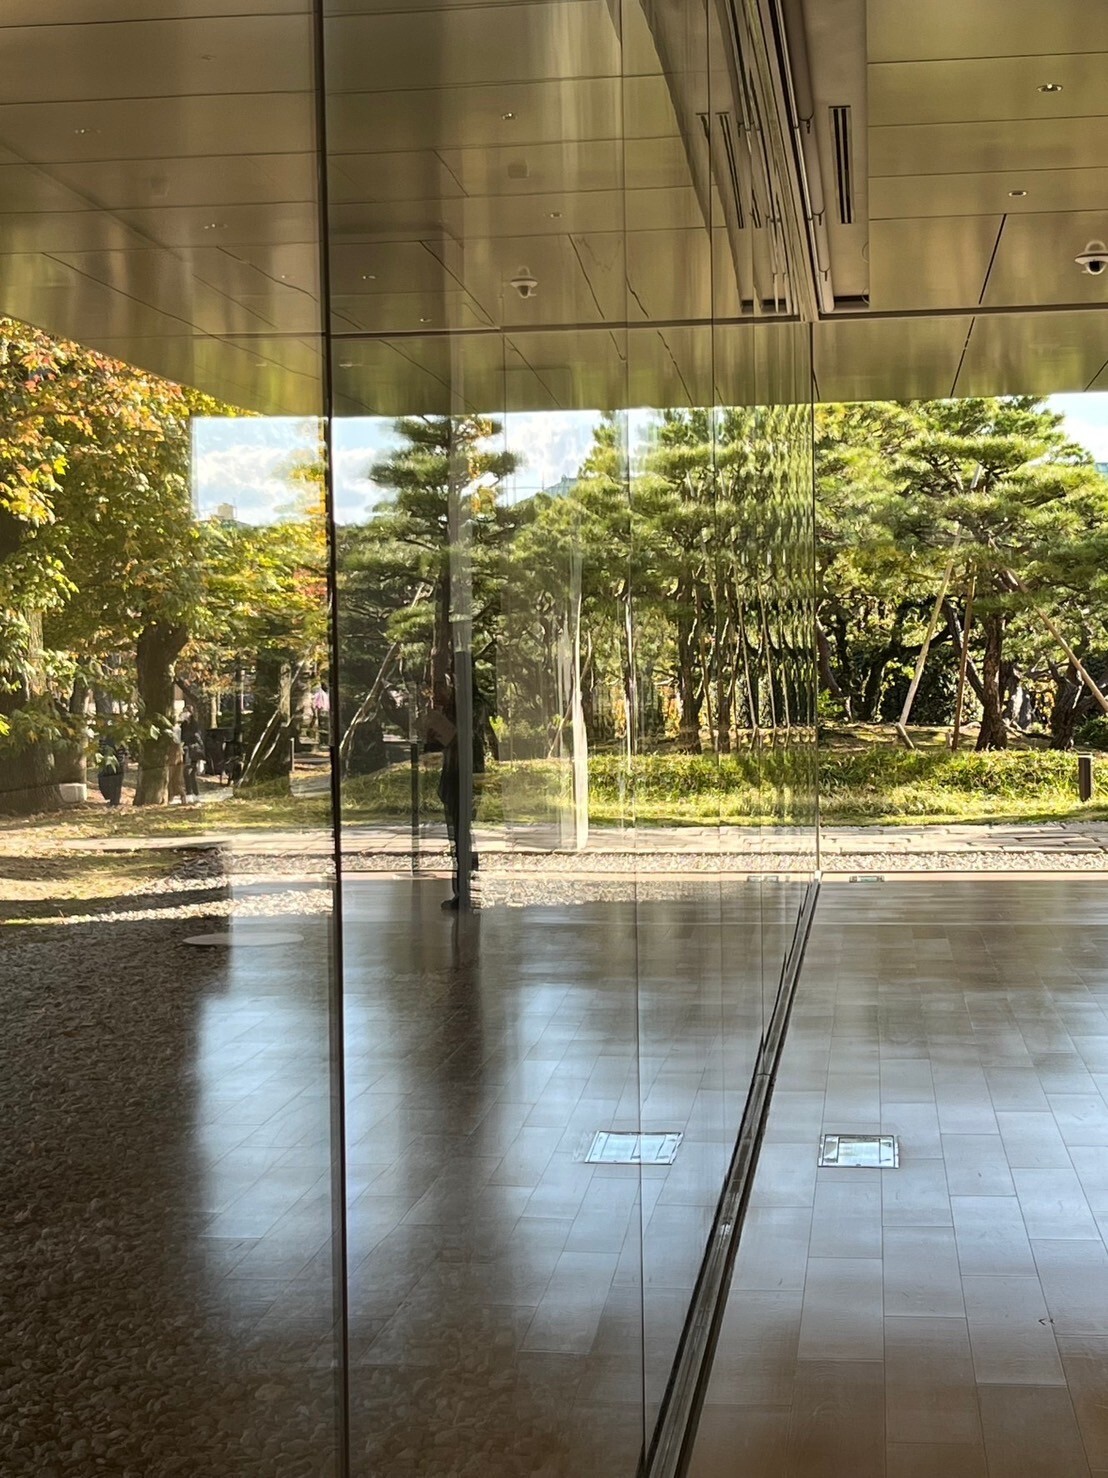 王茹羚在日本的學習活動分享02-大阪成蹊大學的美術デザイン学外演習課程。參觀京都市京セラ美術館的安迪沃荷展覽。